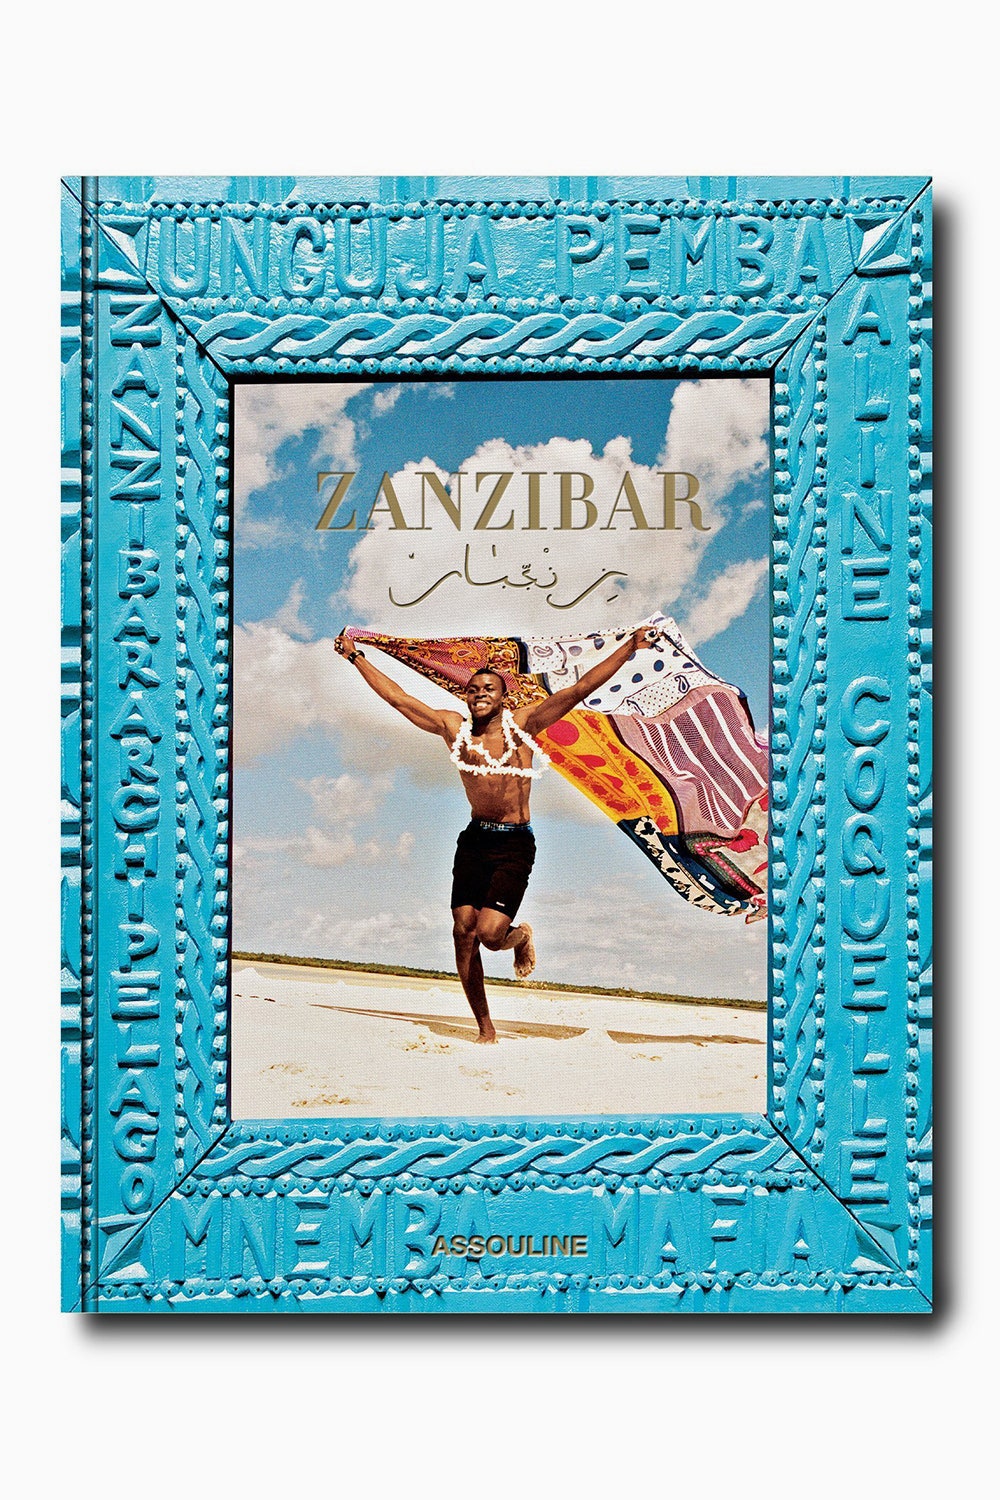 Путешествие в Занзибар с новой книгой Assouline